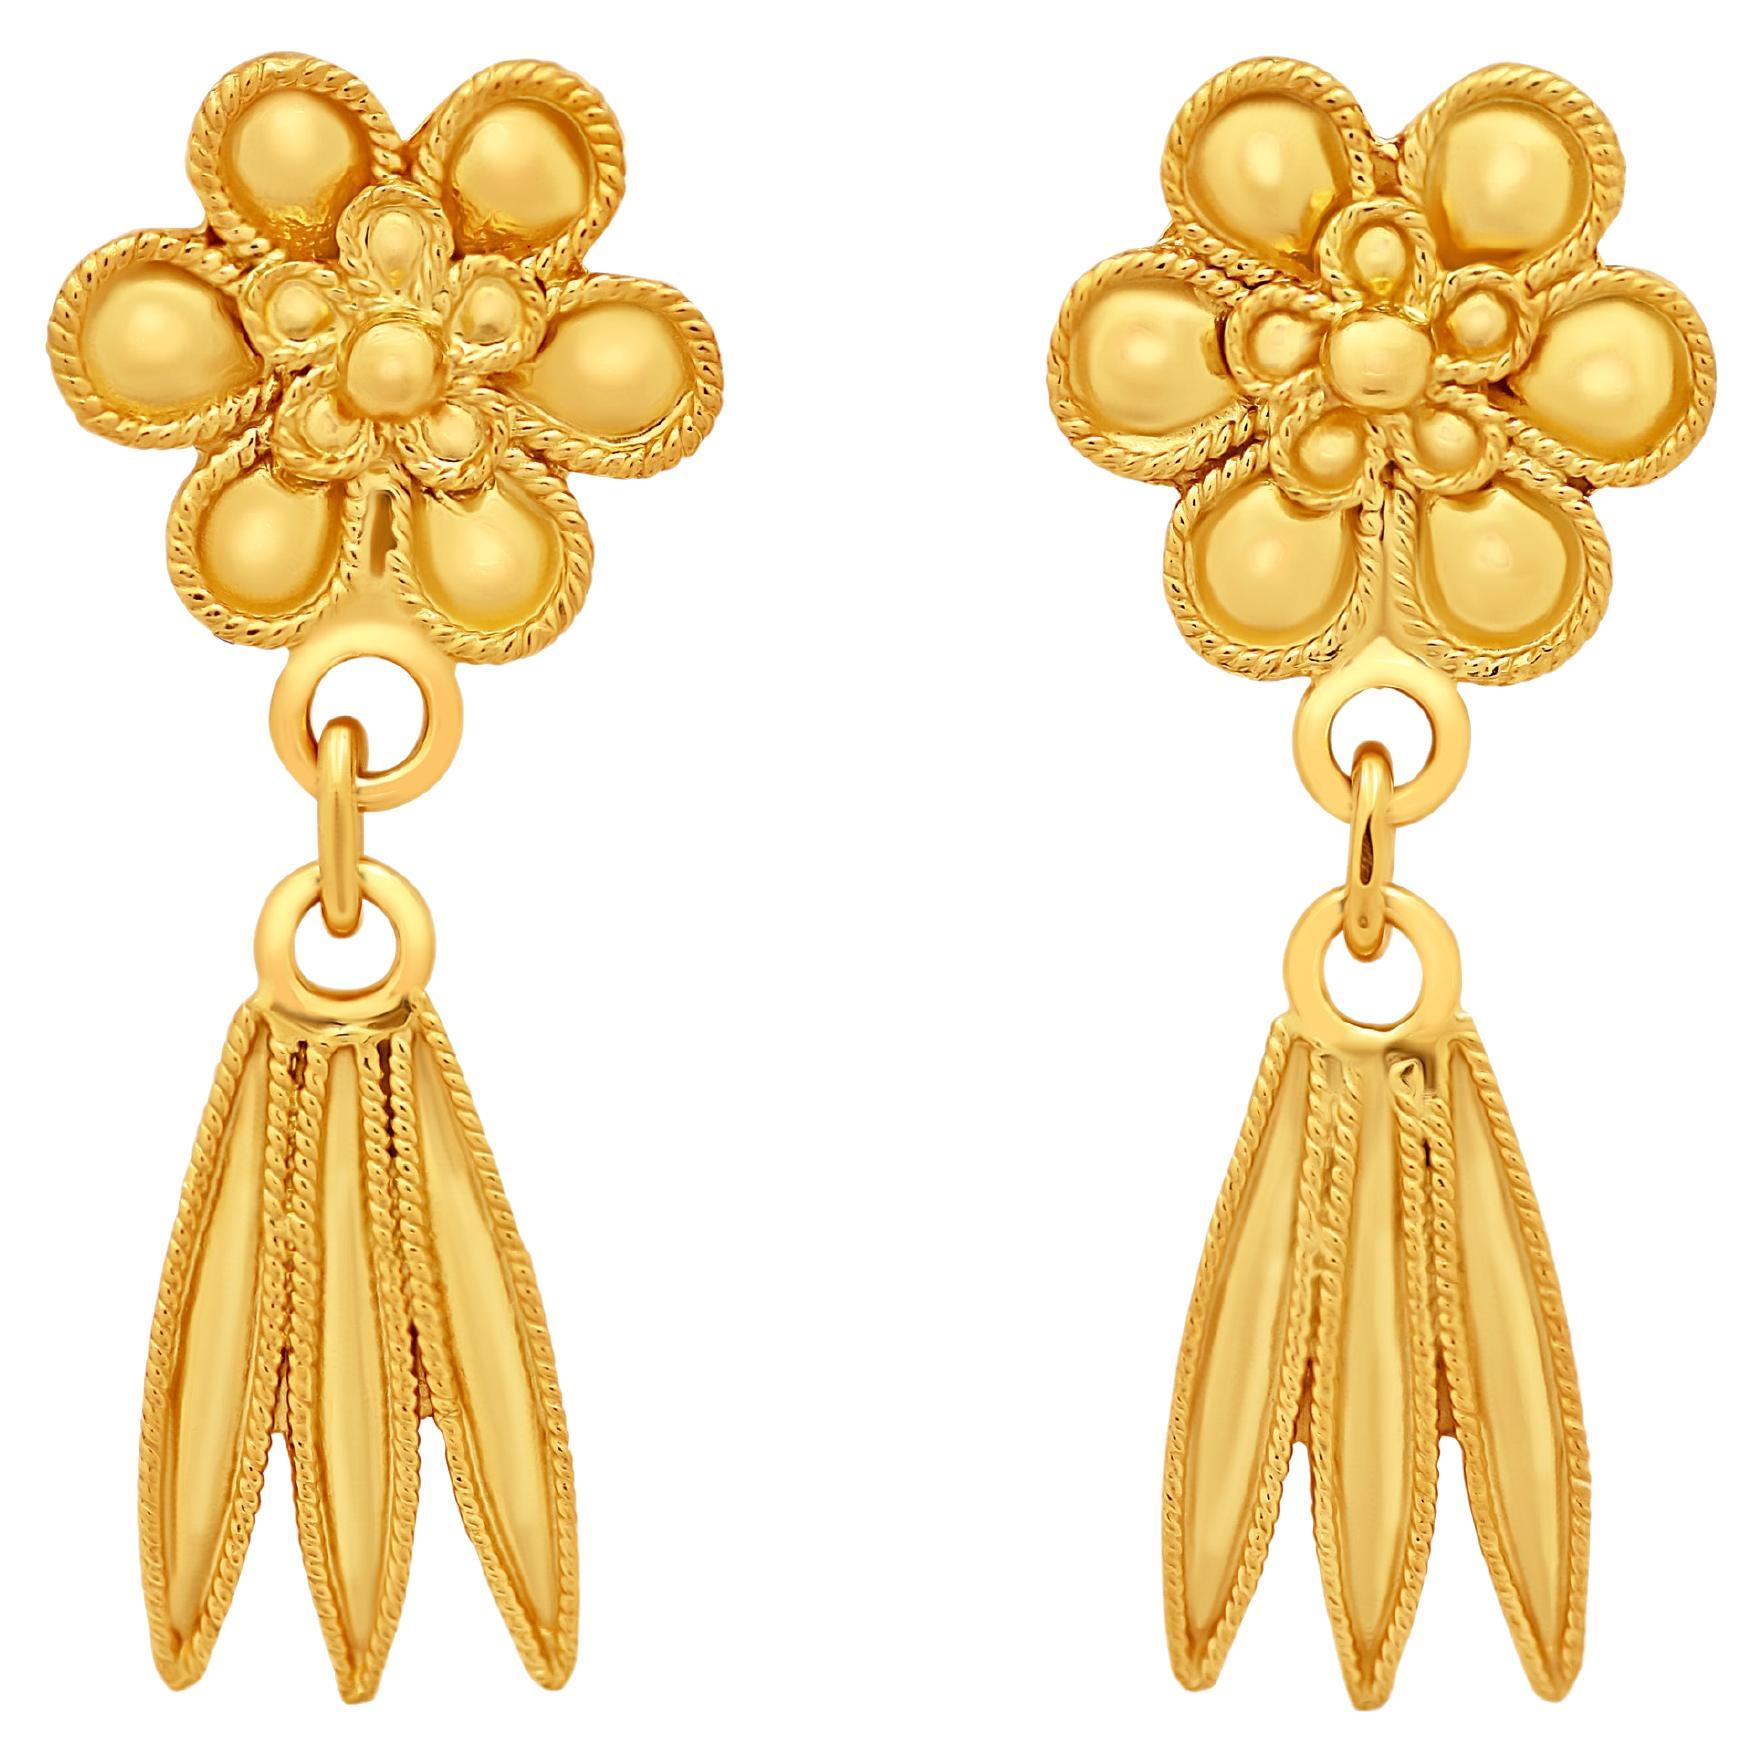 Dimos 18k Gold Rosette Acanthus Leaves Earrings